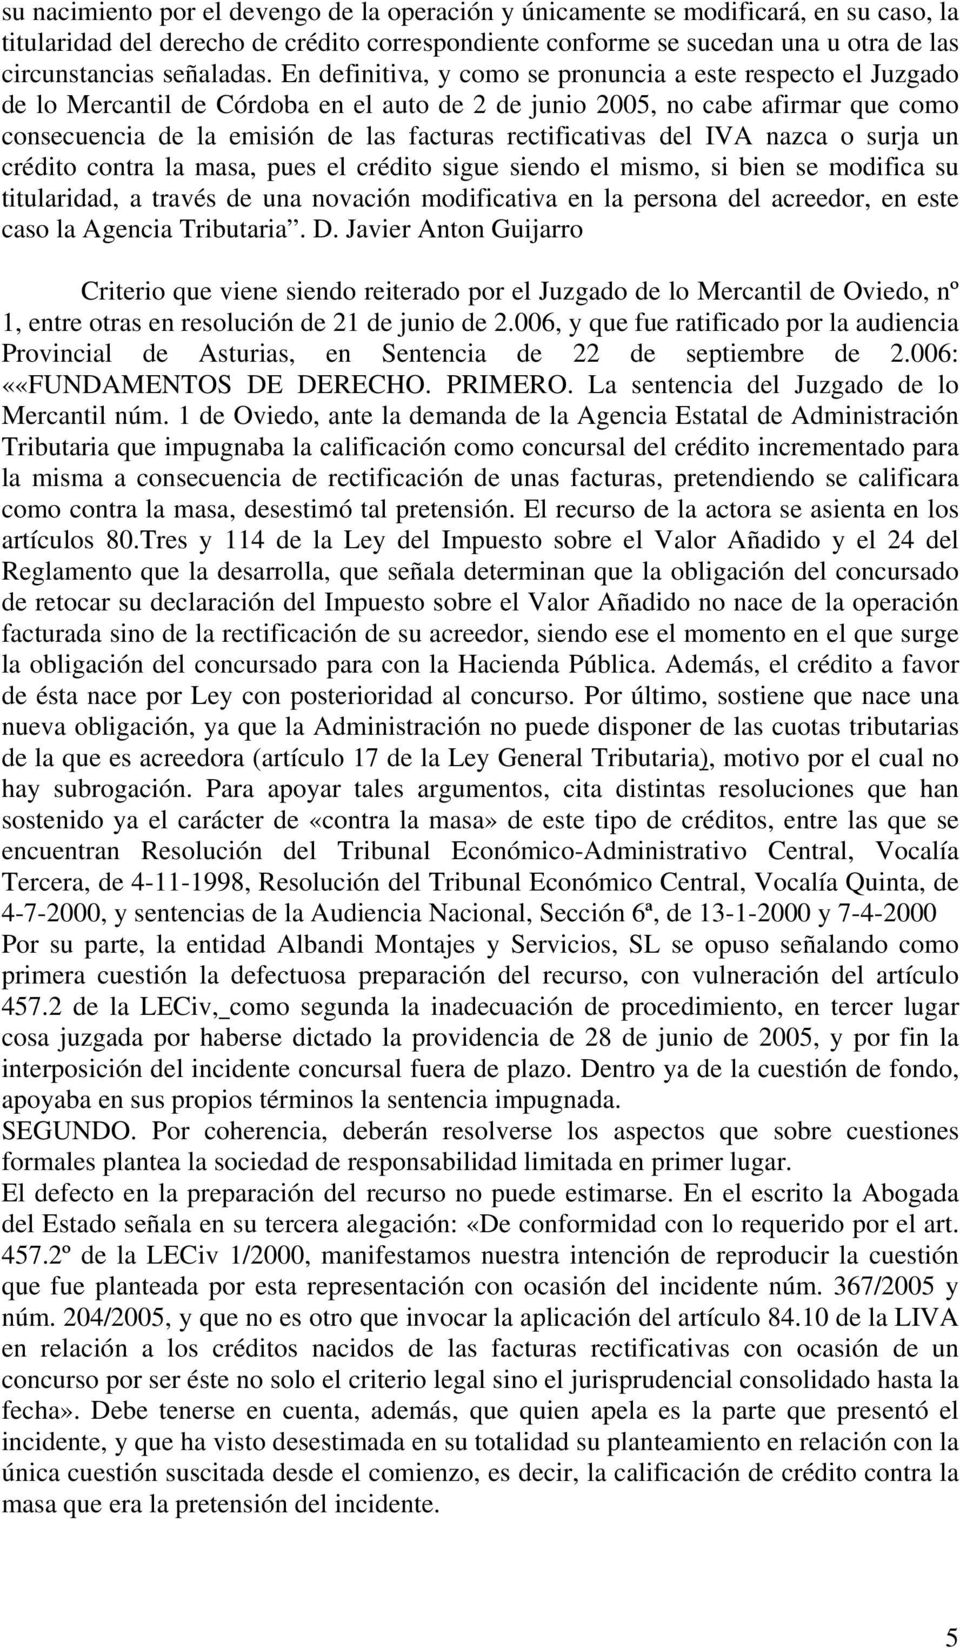 En definitiva, y como se pronuncia a este respecto el Juzgado de lo Mercantil de Córdoba en el auto de 2 de junio 2005, no cabe afirmar que como consecuencia de la emisión de las facturas